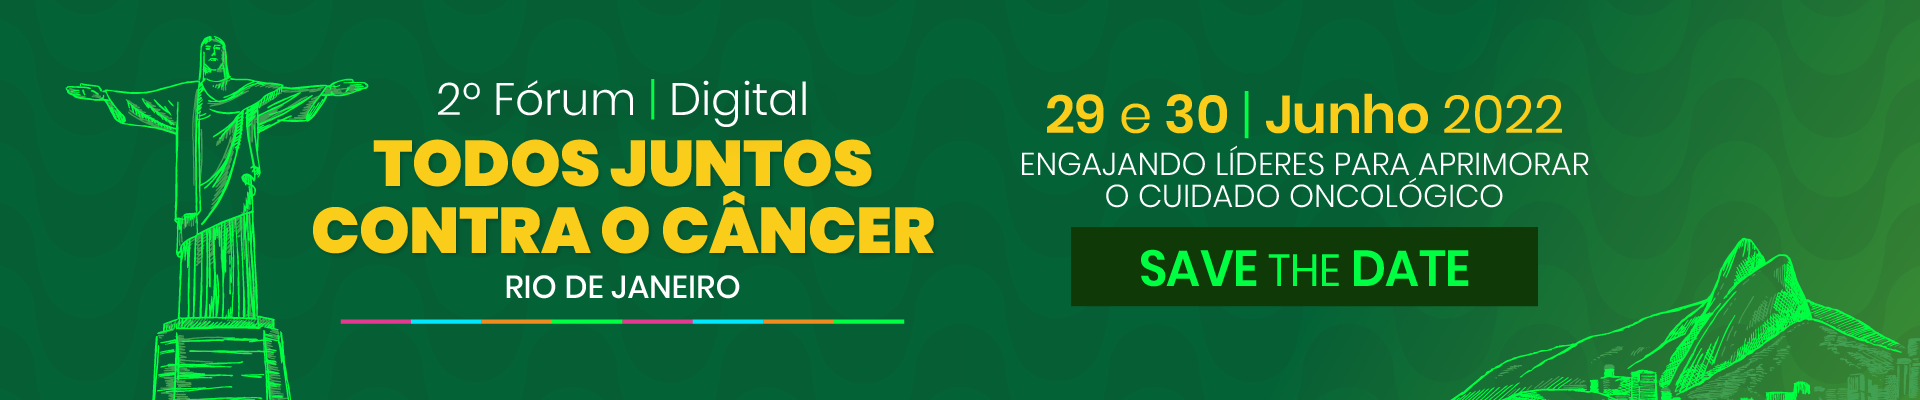 Imagem do escrito segundo Fórum Todos Juntos Contra o Câncer Rio de Janeiro, dias 29 e 30 de junho de 2022, engajando líderes para aprimorar o cuidado oncológico, save the date